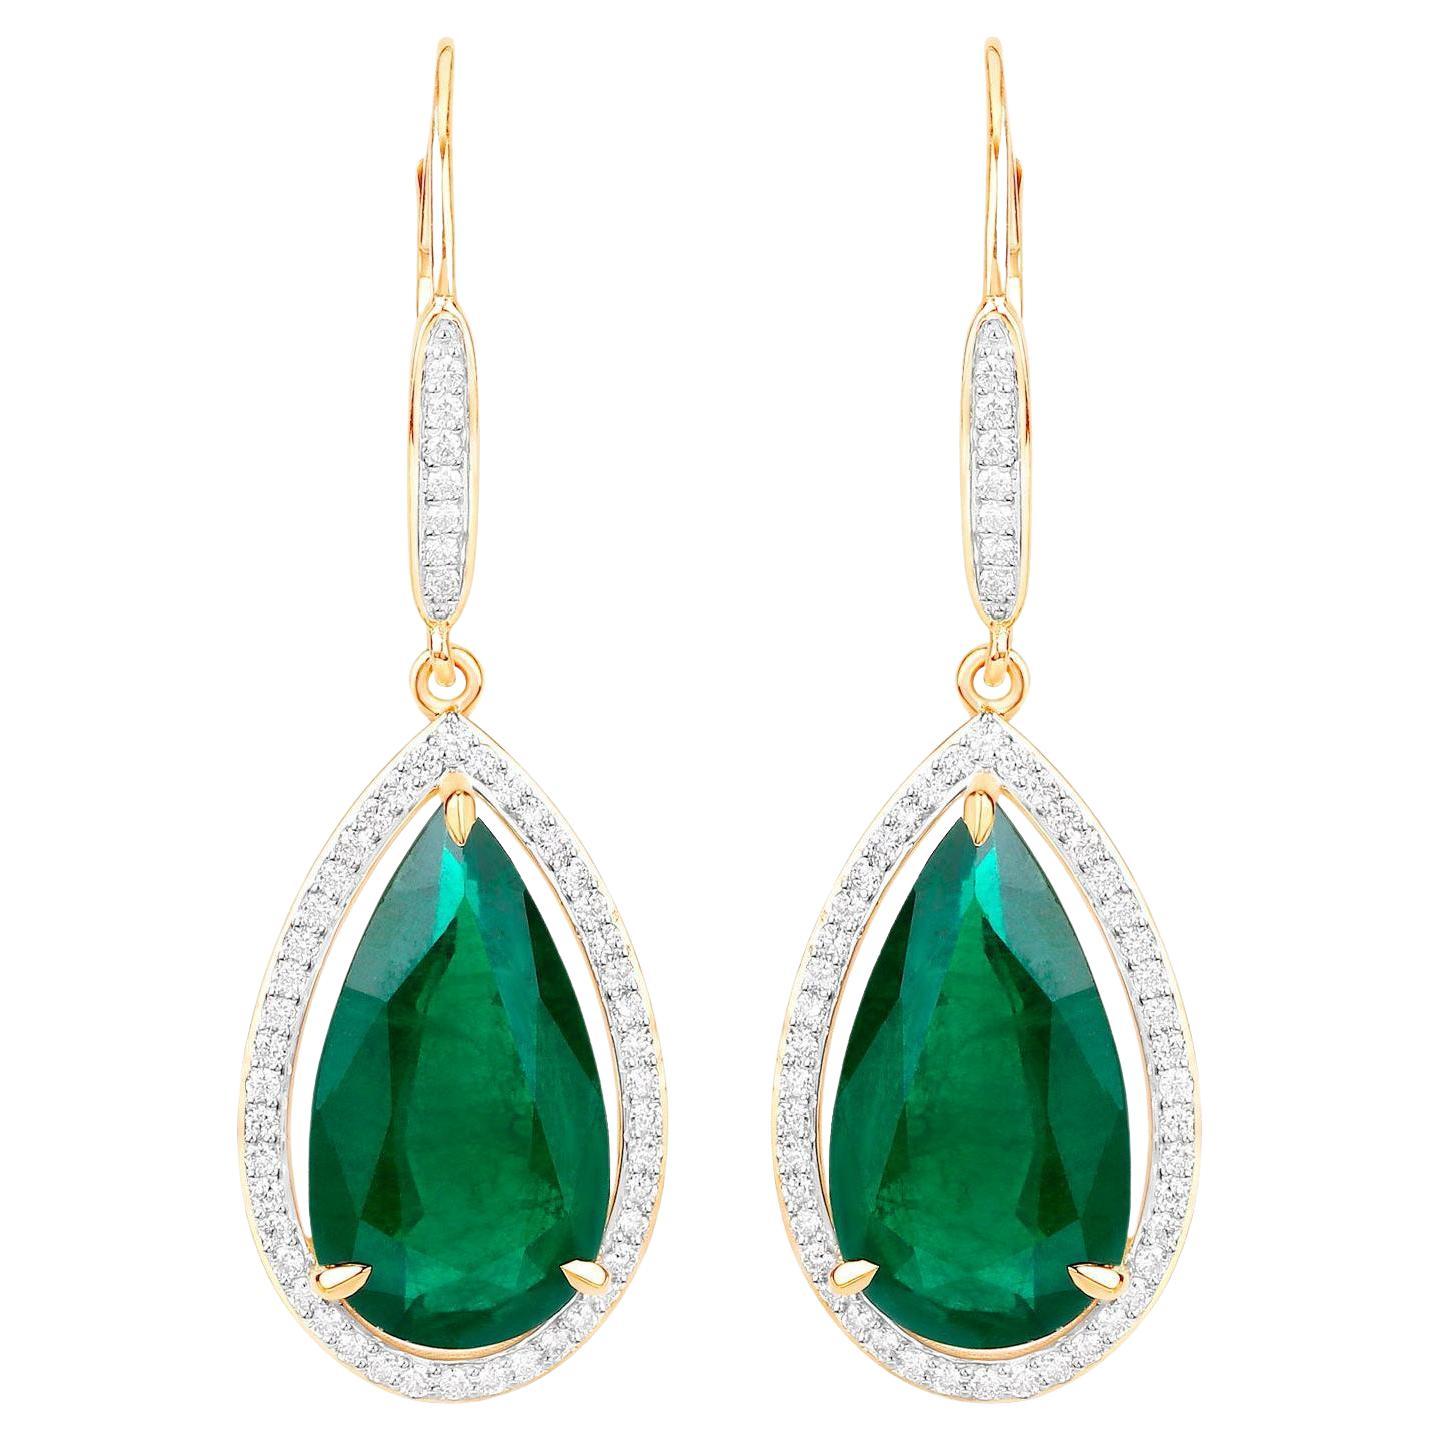 IGI Certified Zambian Emerald Dangle Earrings Diamonds 16.15 Carats 14K Yellow G